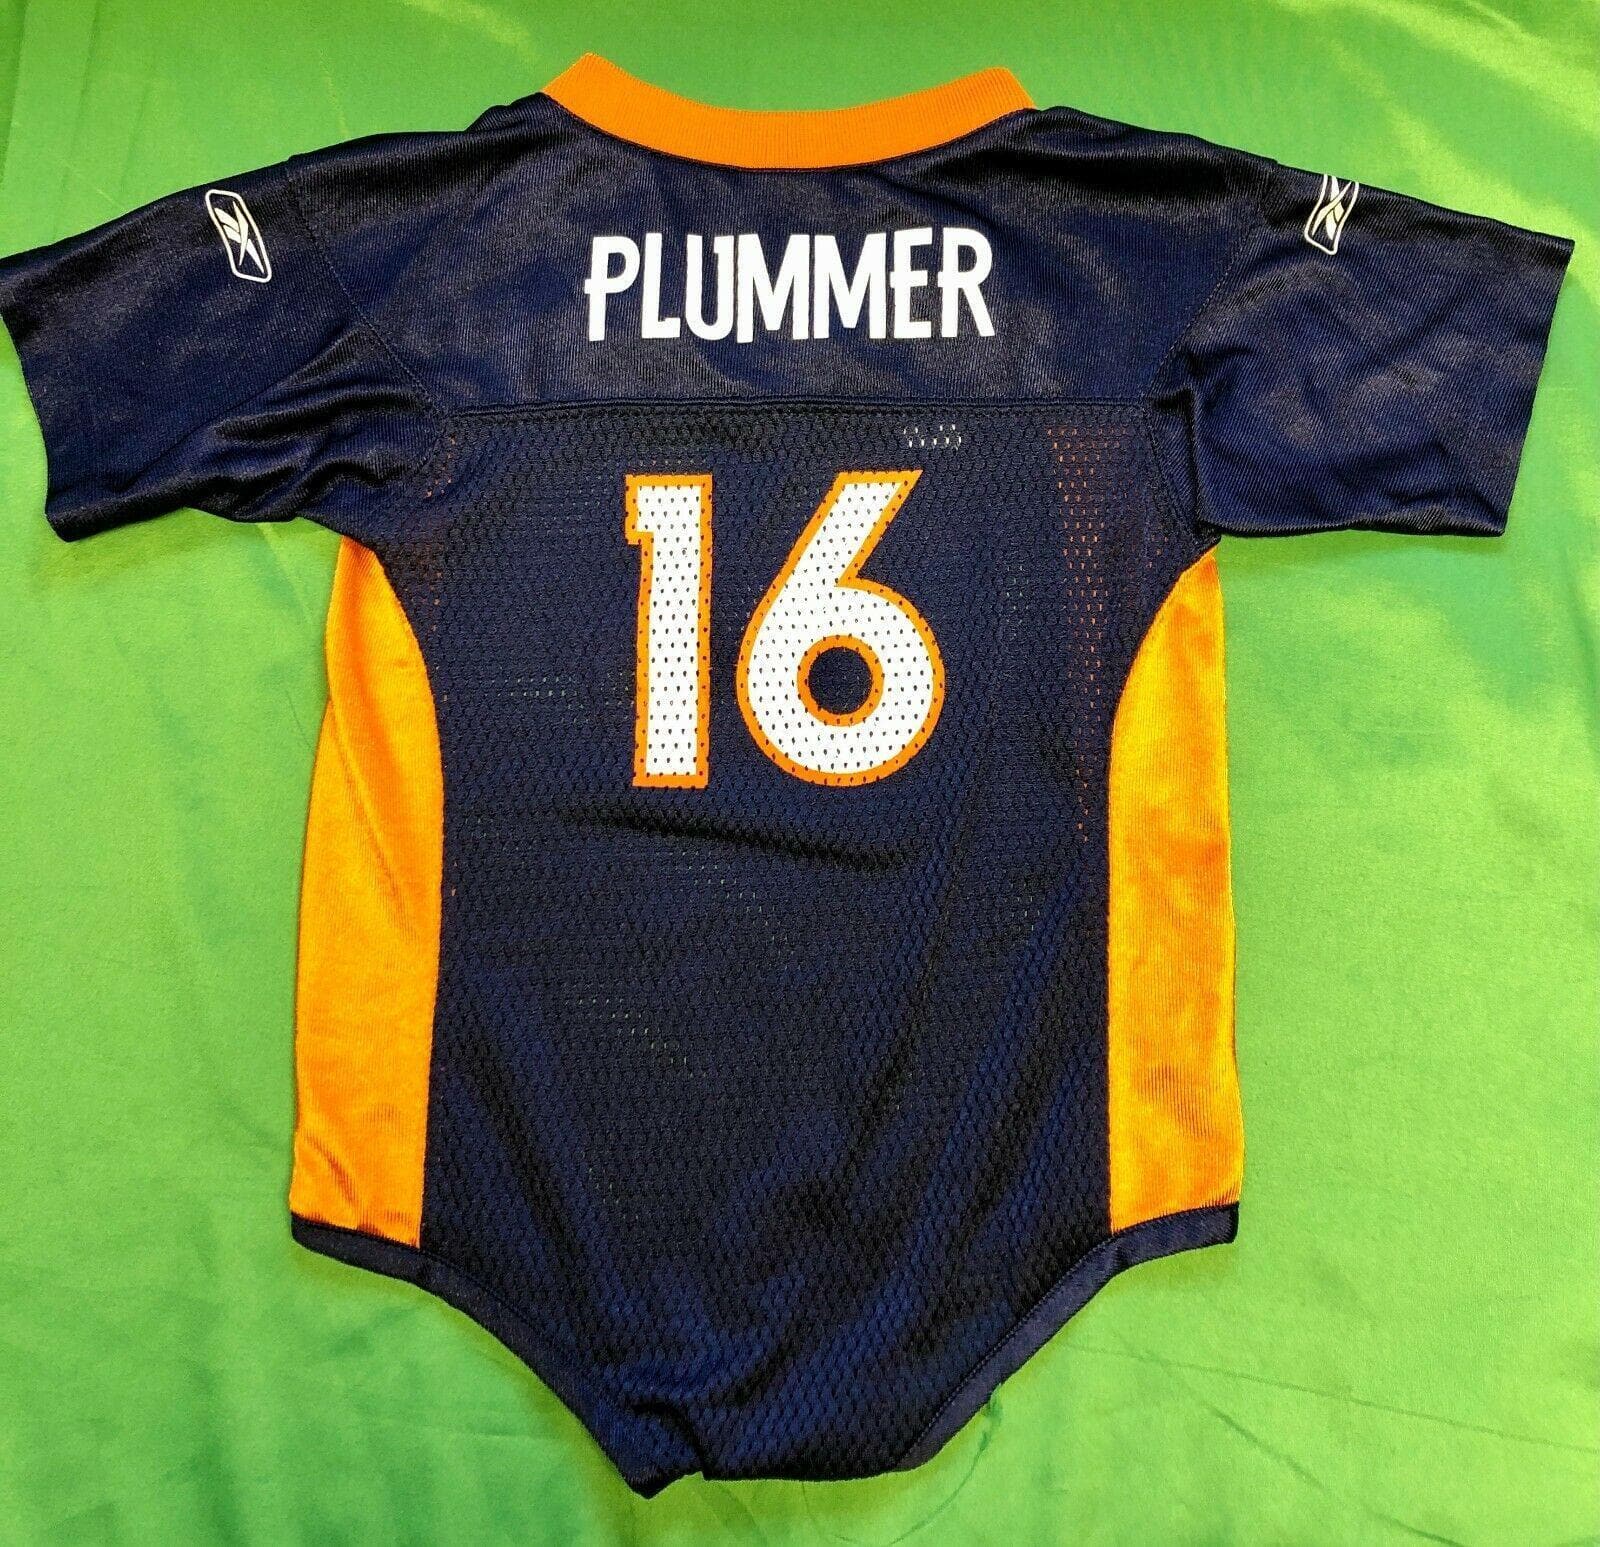 NFL Denver Broncos Jake Plummer #16 Reebok Bodysuit/Vest  24 months